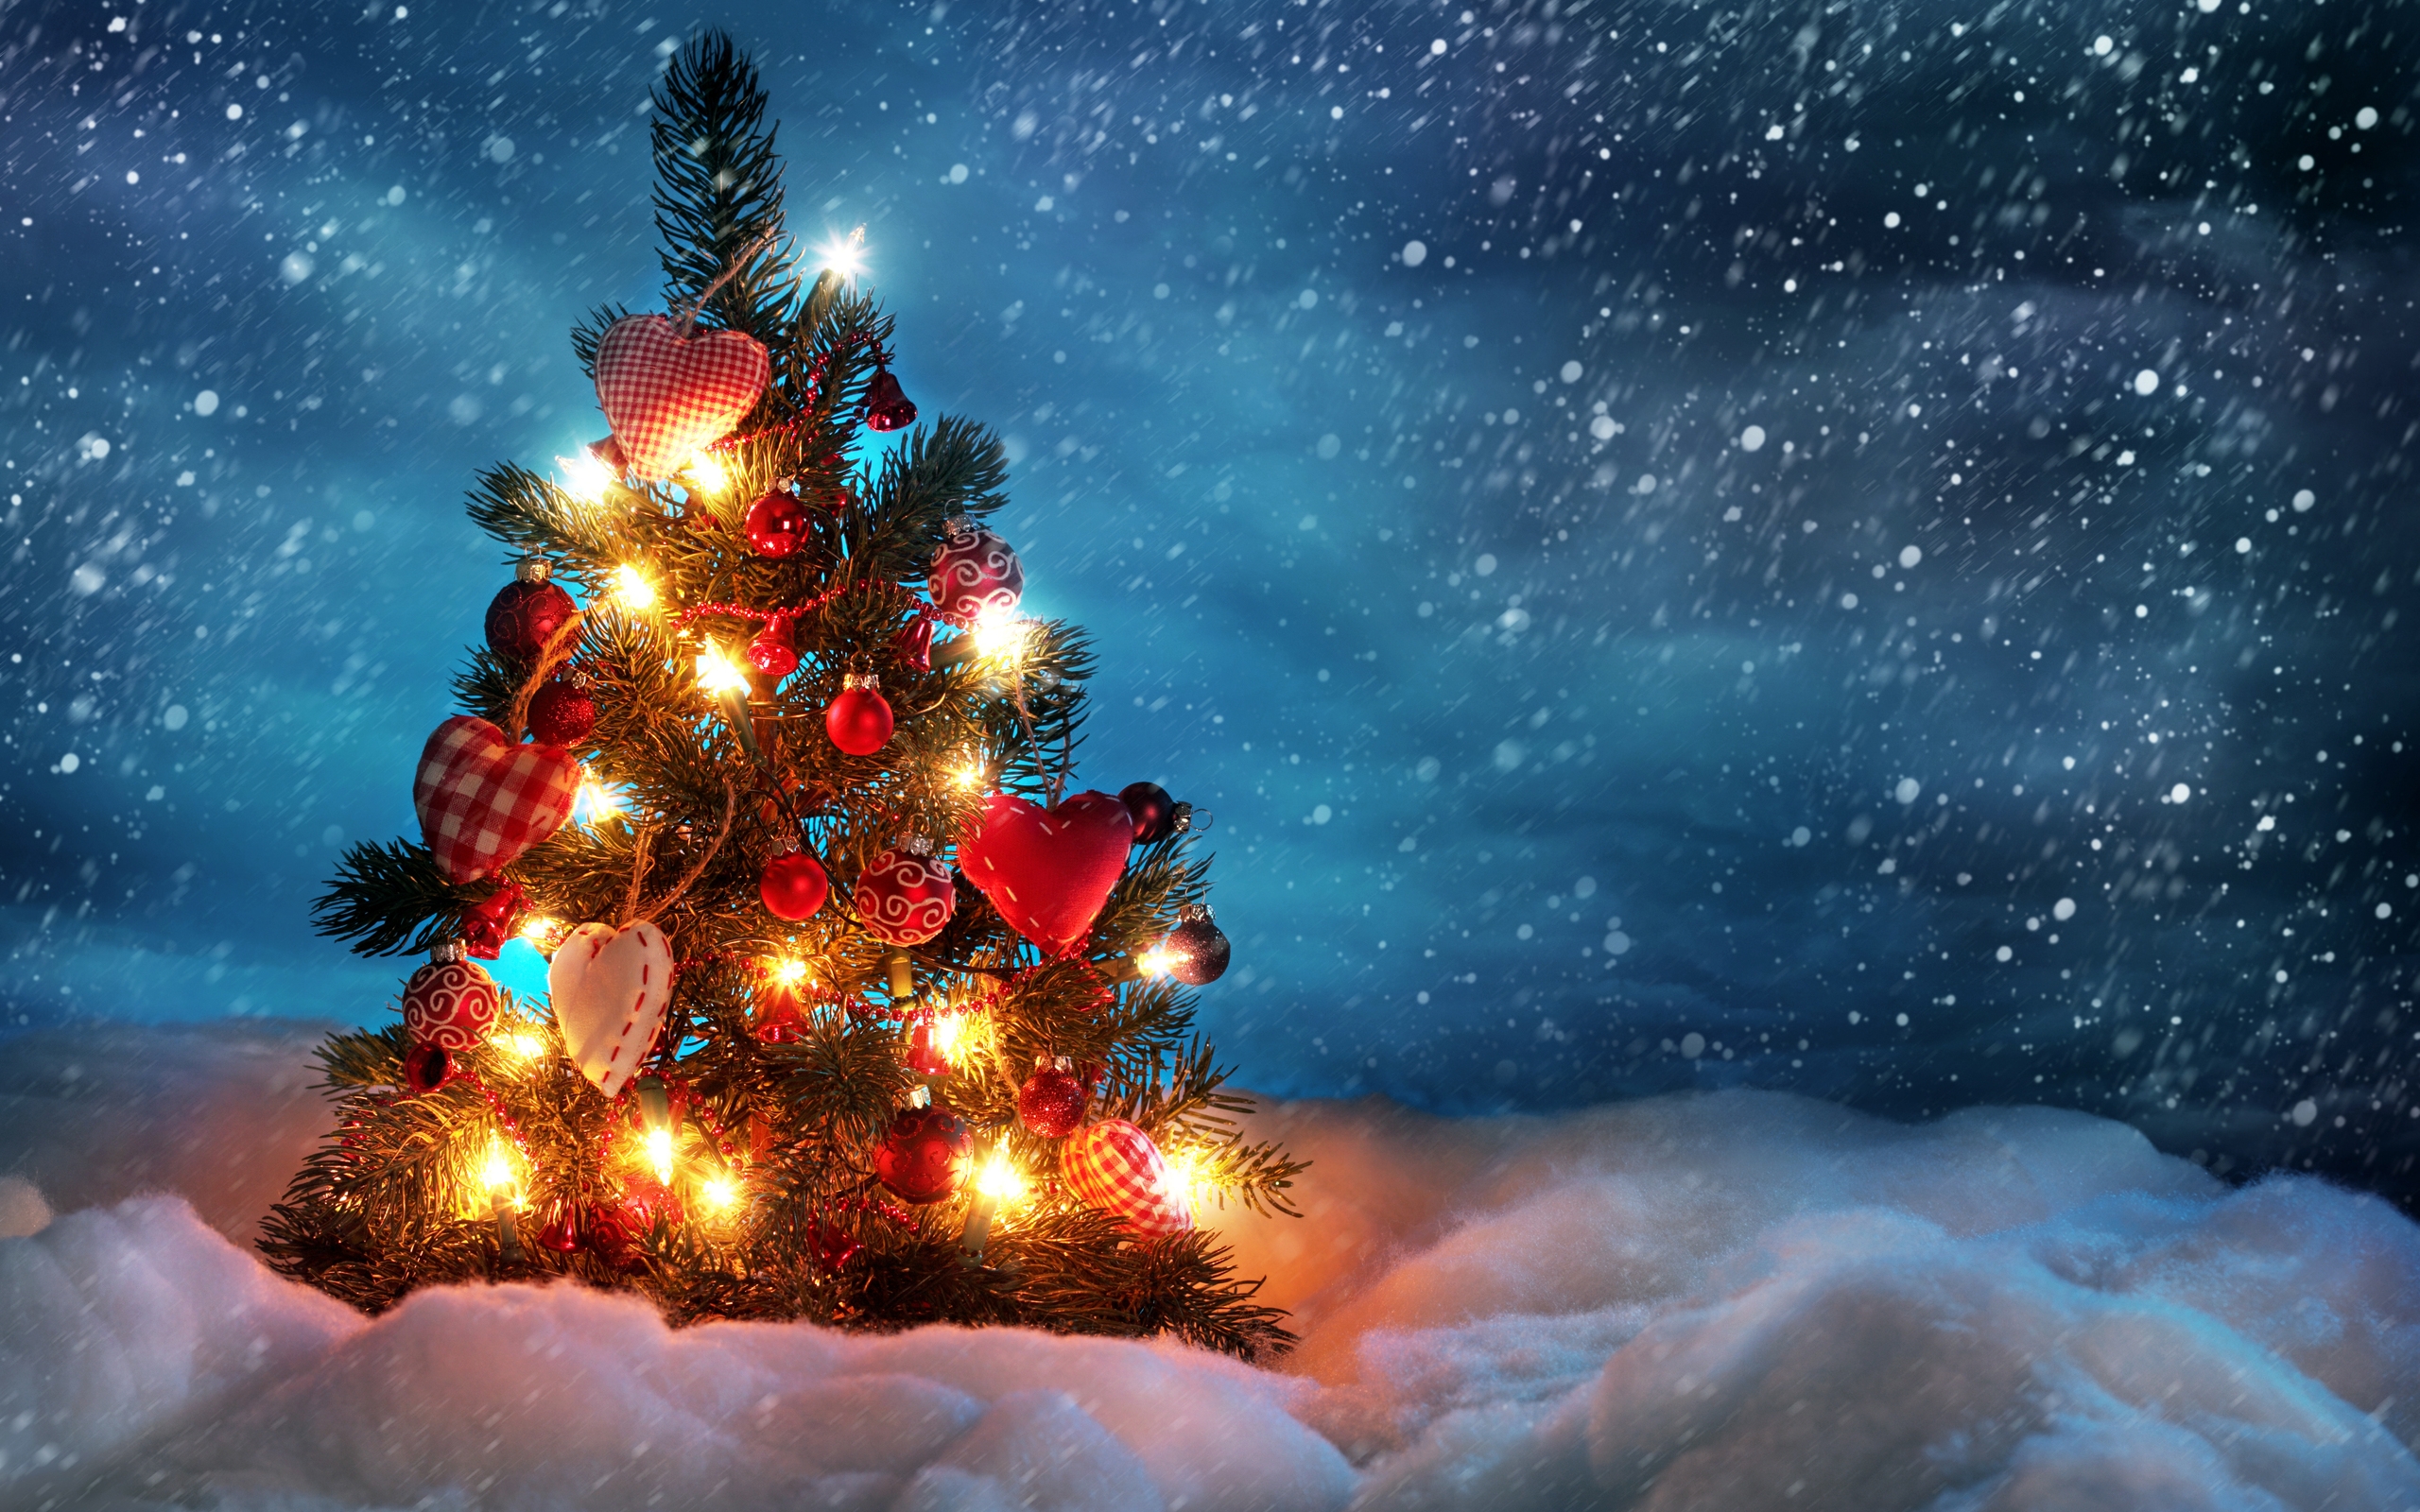 خلفيات شجرة عيد الميلاد 2013 - Christmas Trees HD Wallpaper 2013- خلفيات شجرة الميلاد 2013